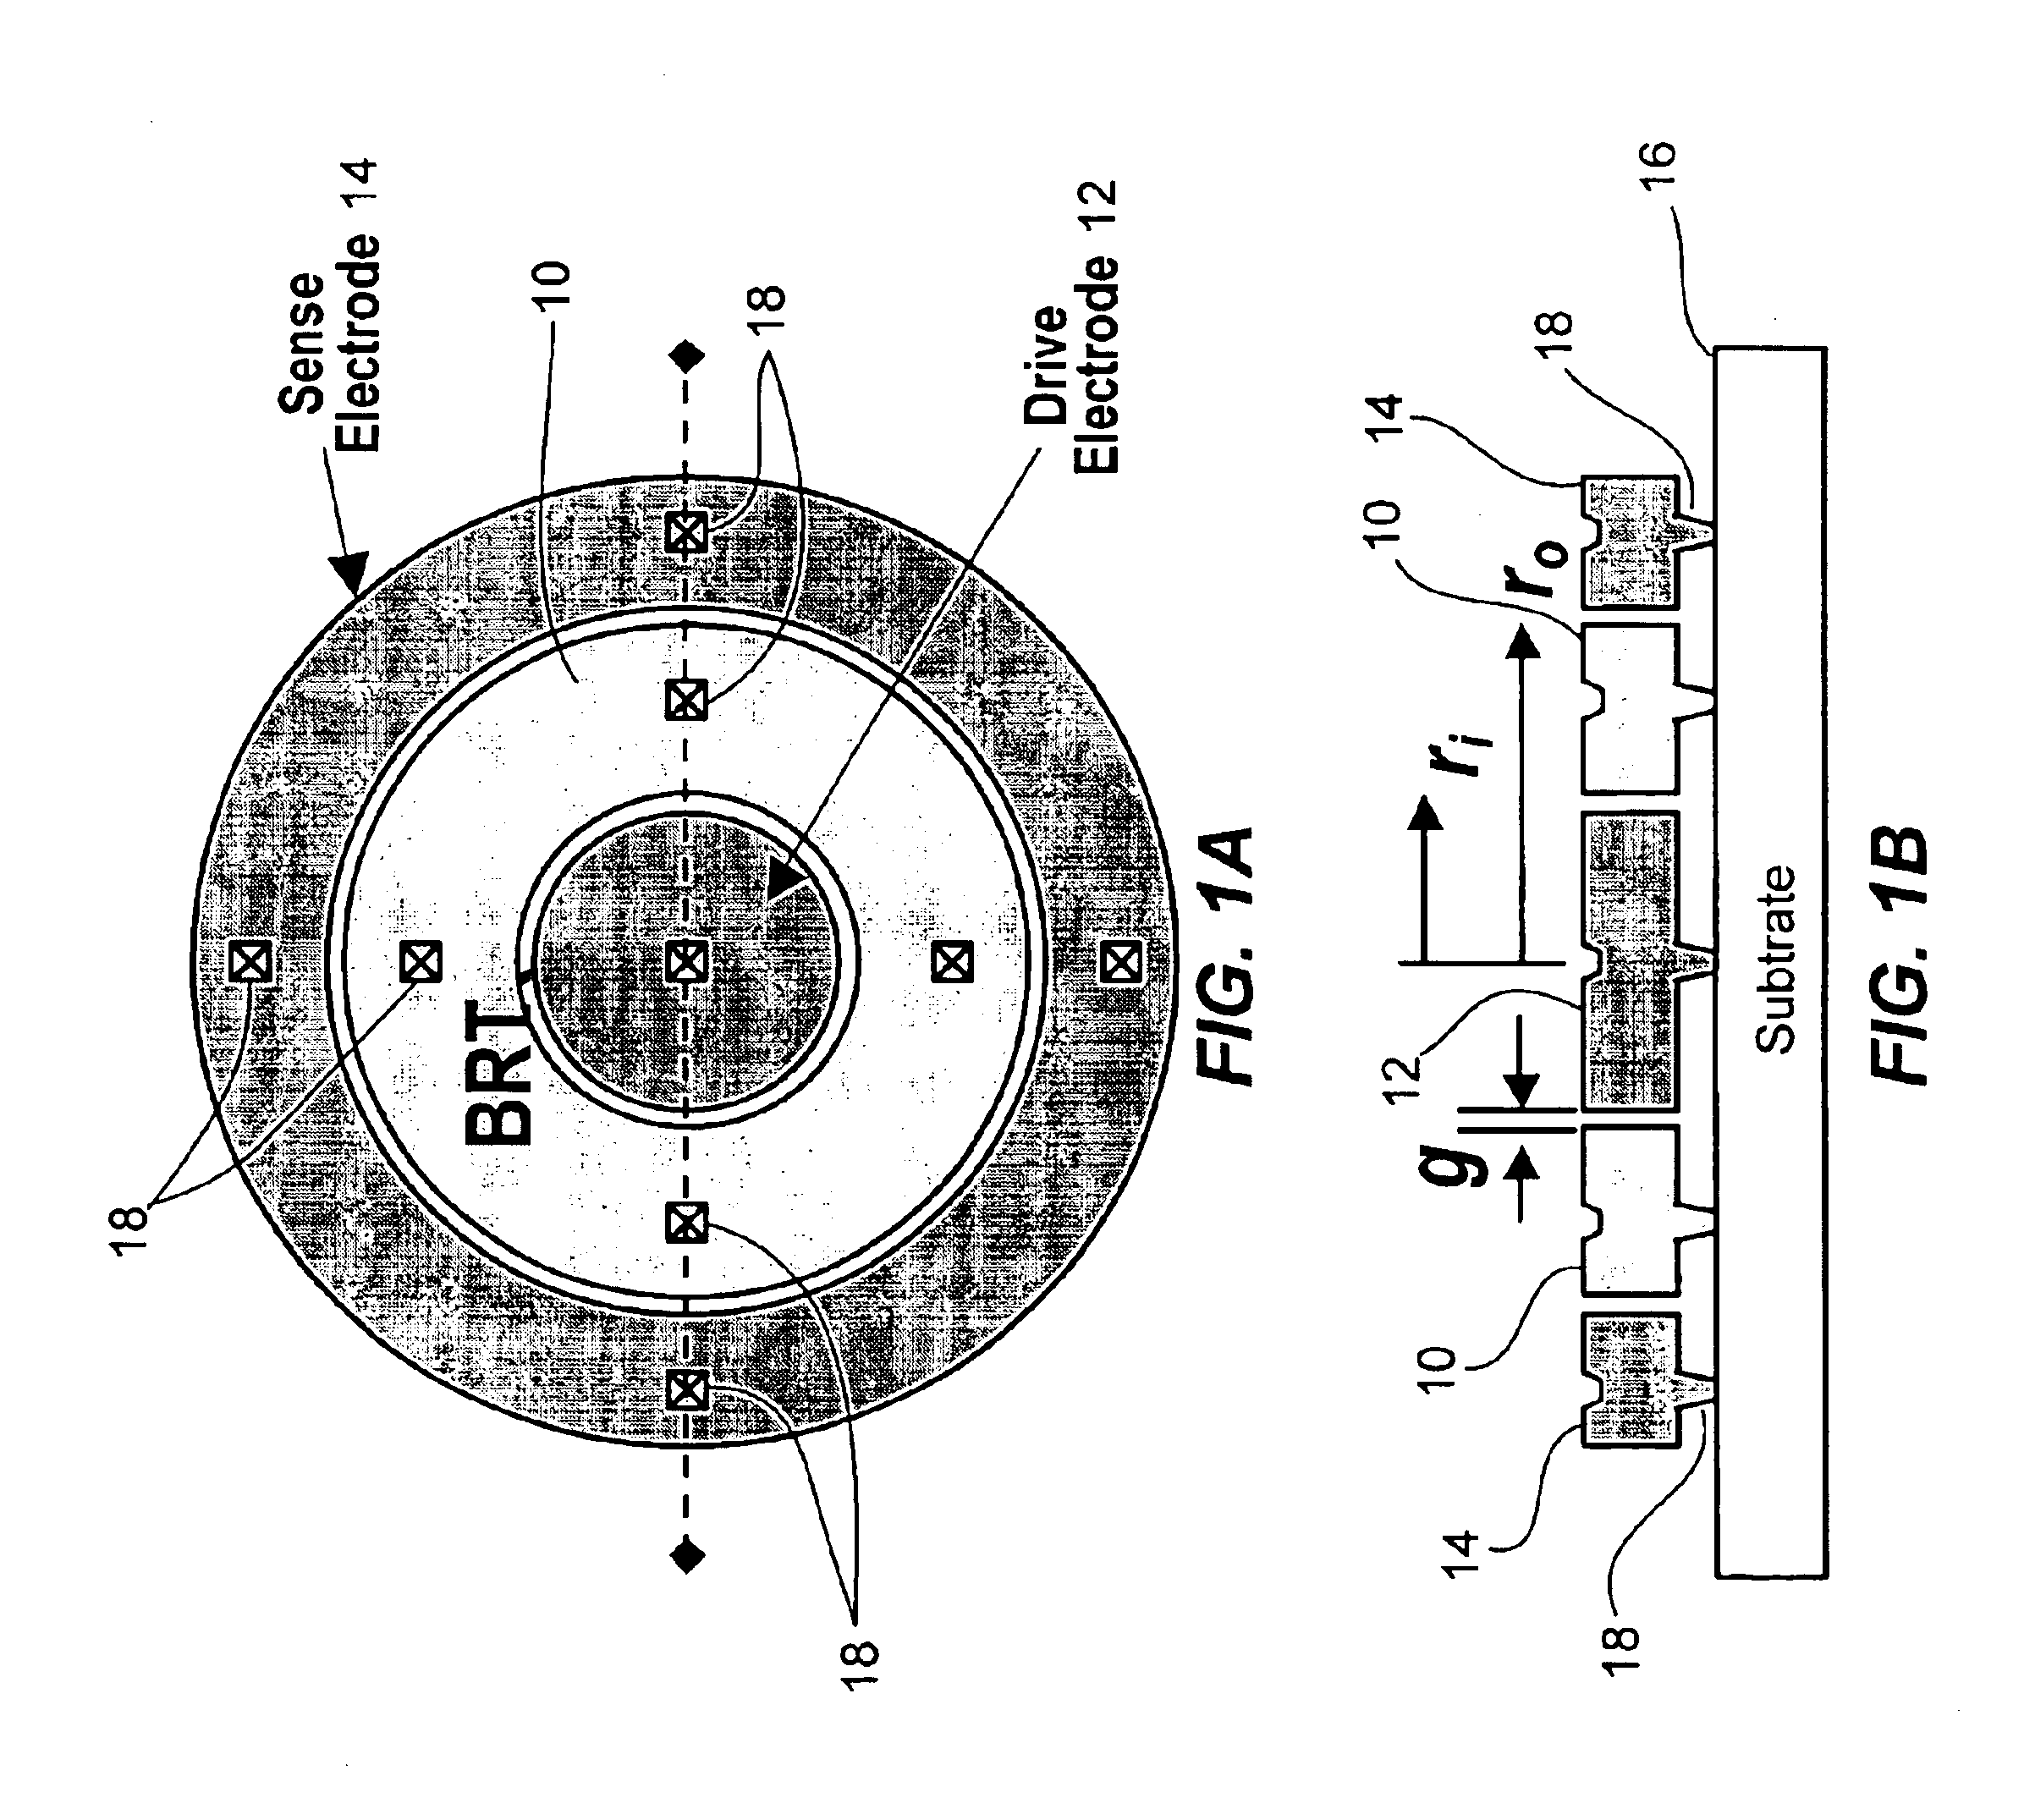 Radial bulk annular resonator using MEMS technology